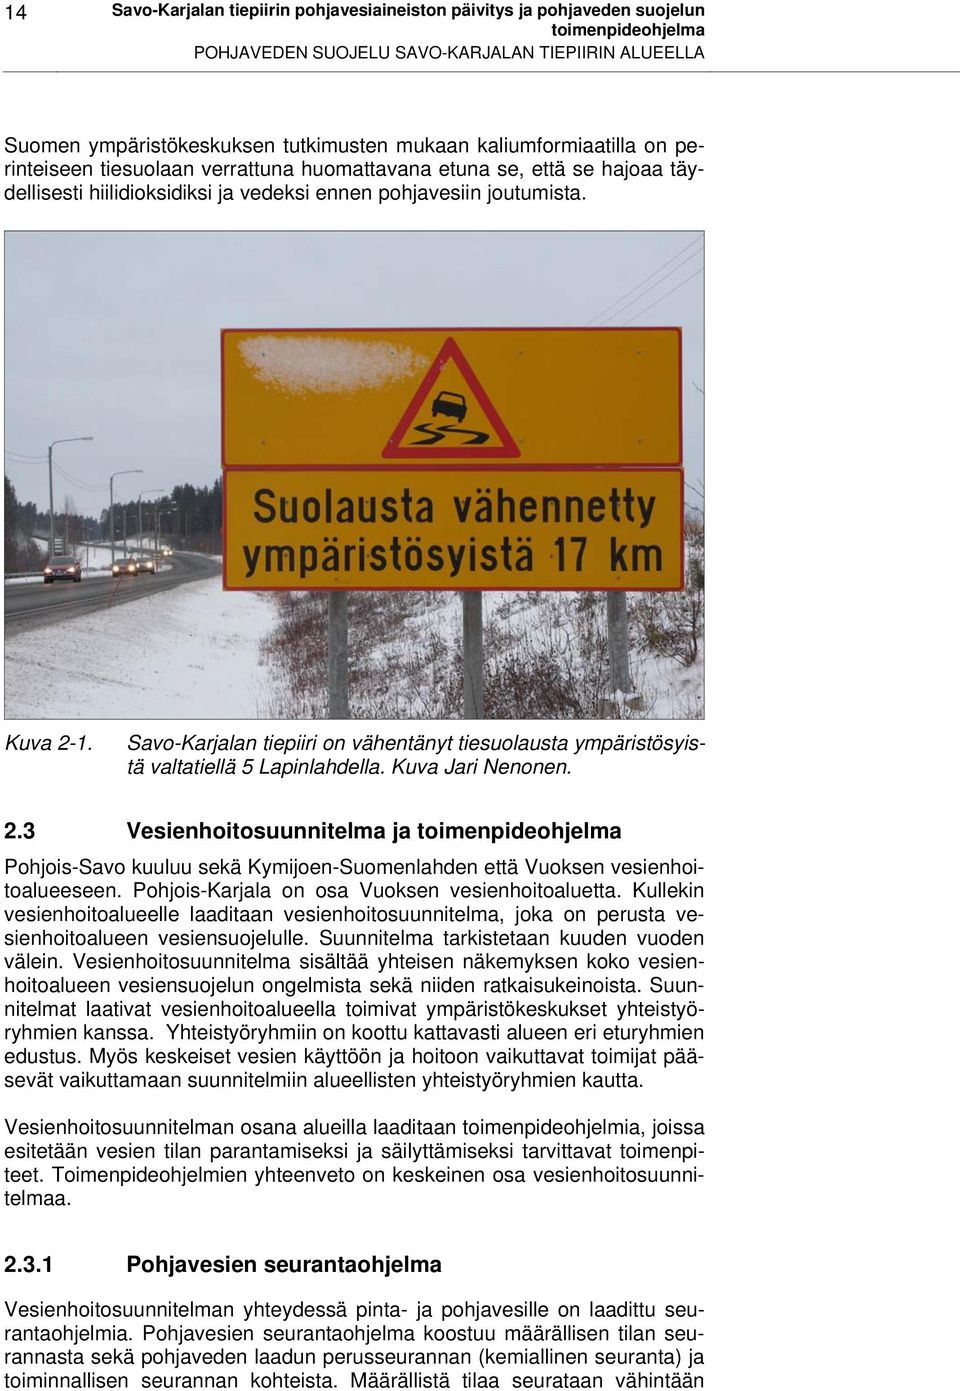 Savo-Karjalan tiepiiri on vähentänyt tiesuolausta ympäristösyistä valtatiellä 5 Lapinlahdella. Kuva Jari Nenonen. 2.